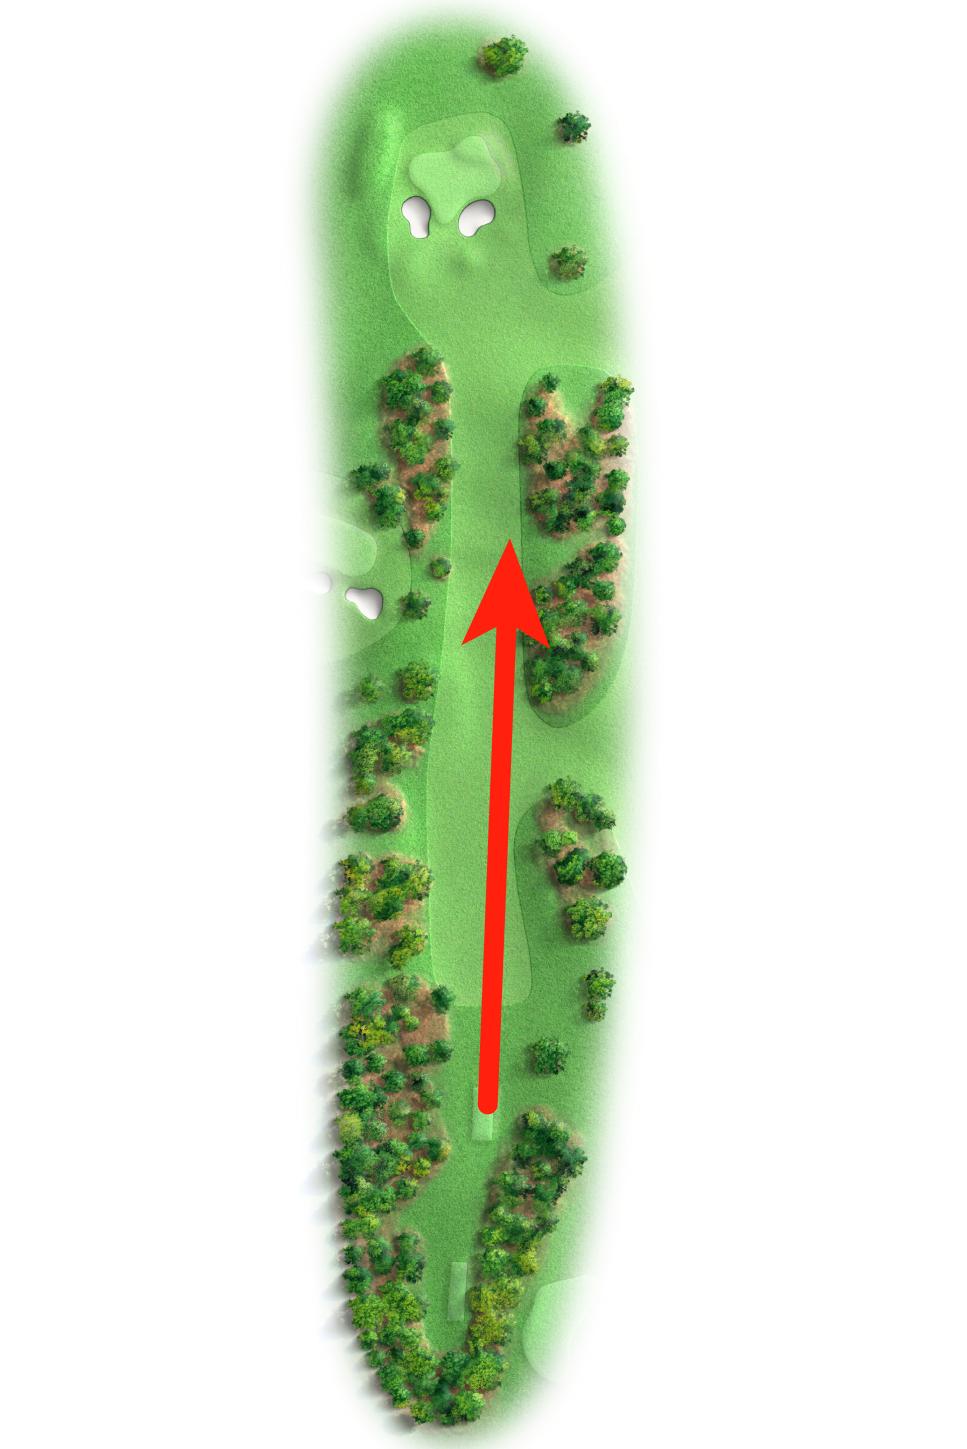 https://www.golfdigest.com/content/dam/images/golfdigest/fullset/2024/4/augusta-national-bogey-golfers-guide-seventeenth-hole.jpg